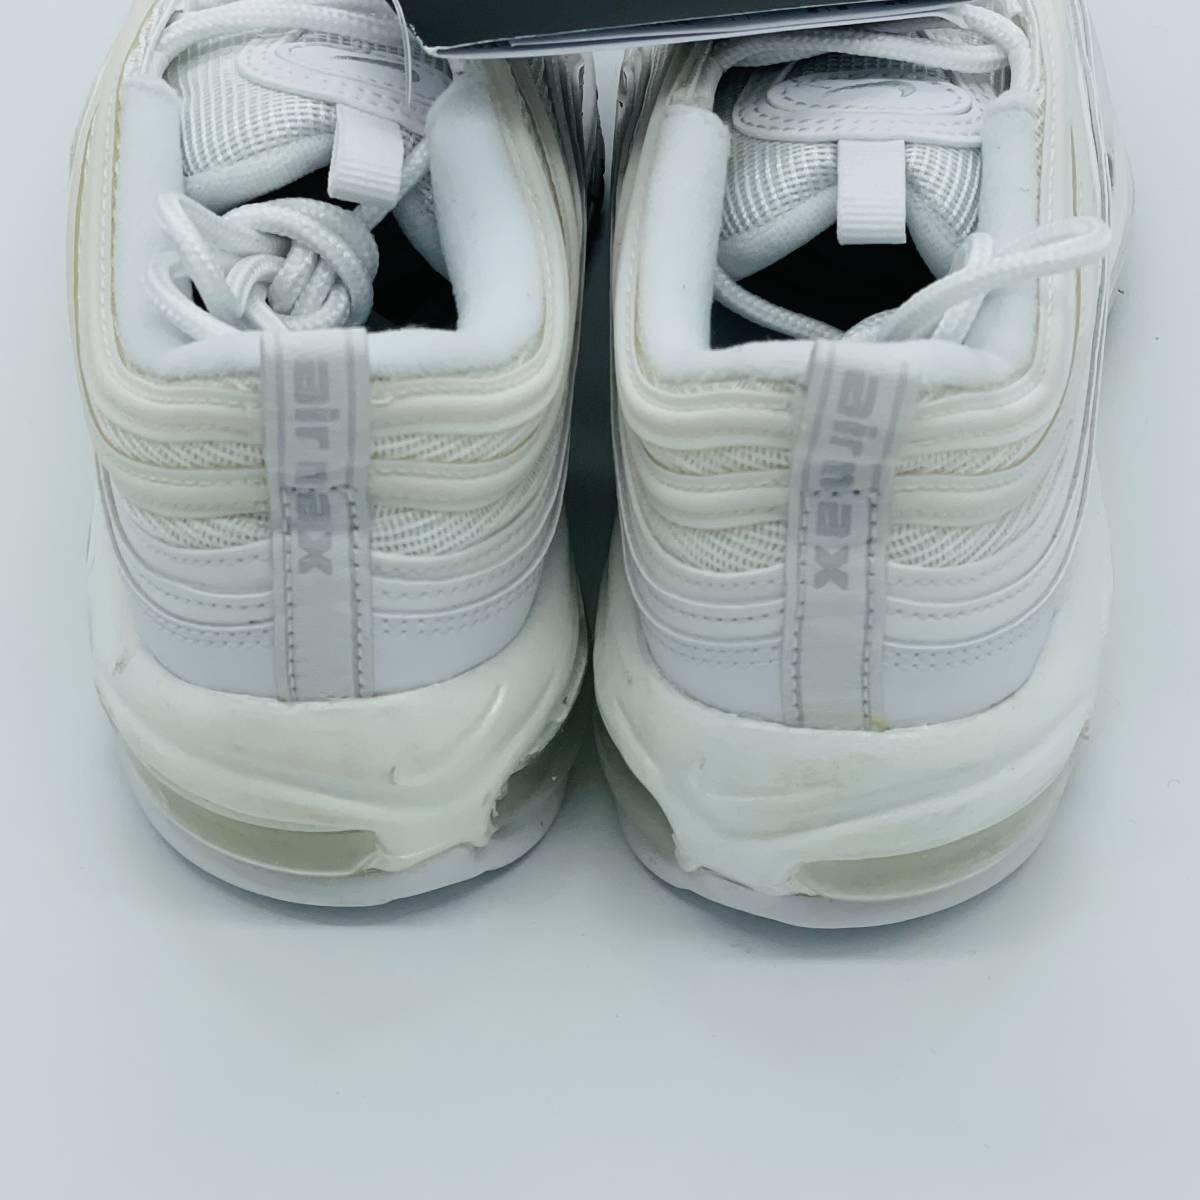 【新品未使用】Nike Air Max 97 White Pure Platinum 921733-100 ナイキ エアマックス エアフォース1 Airforce ホワイト 白 アディダス_画像6